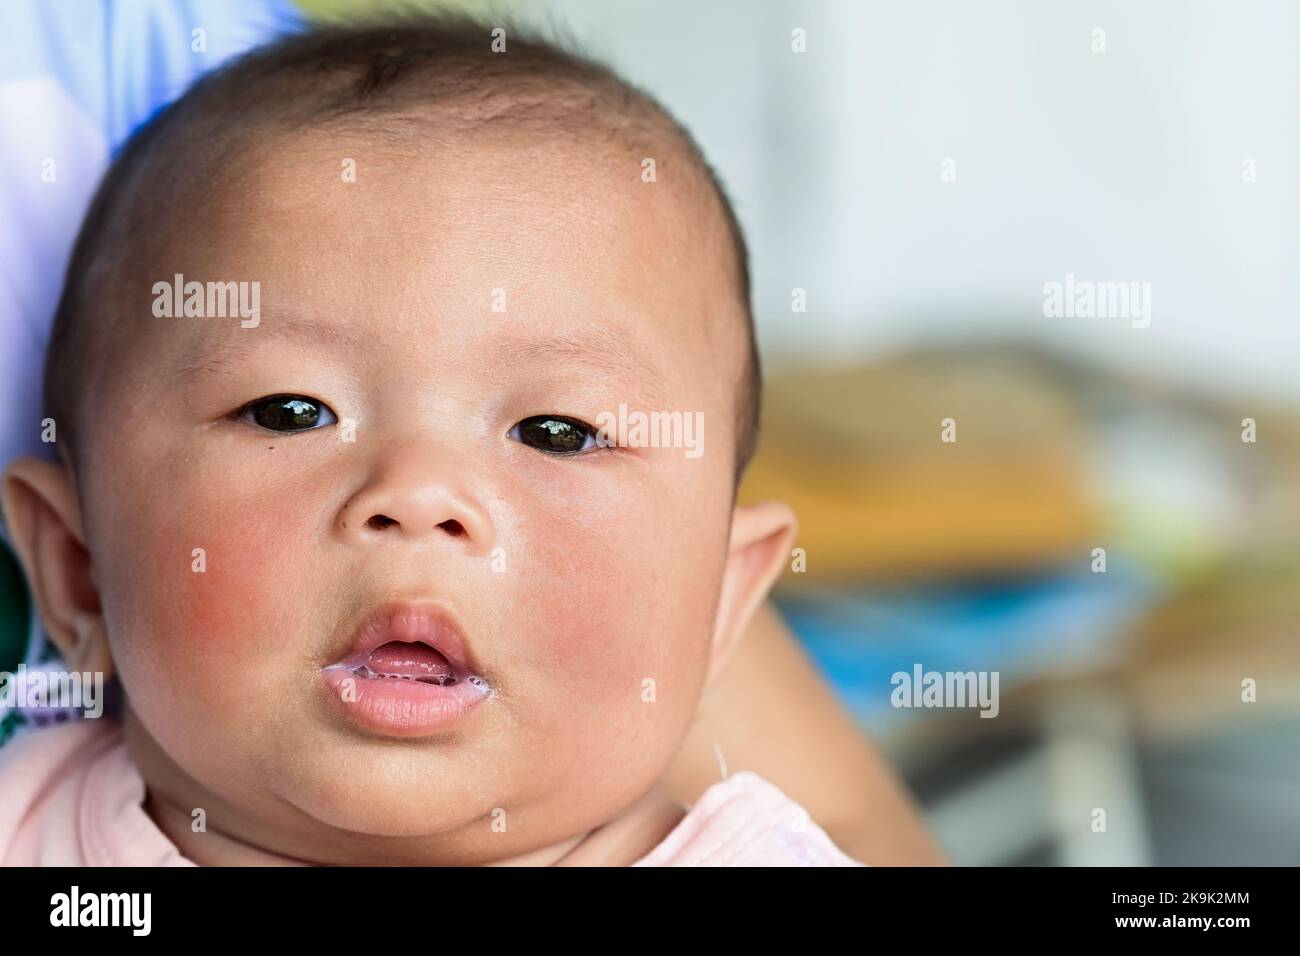 sarpullido en la cara del bebé, bebé con dermatitis problema de sarpullido. Alergia Sufriendo de alergias alimenticias. Primer plano síntoma atópico en mejillas de la piel Concepto Foto de stock